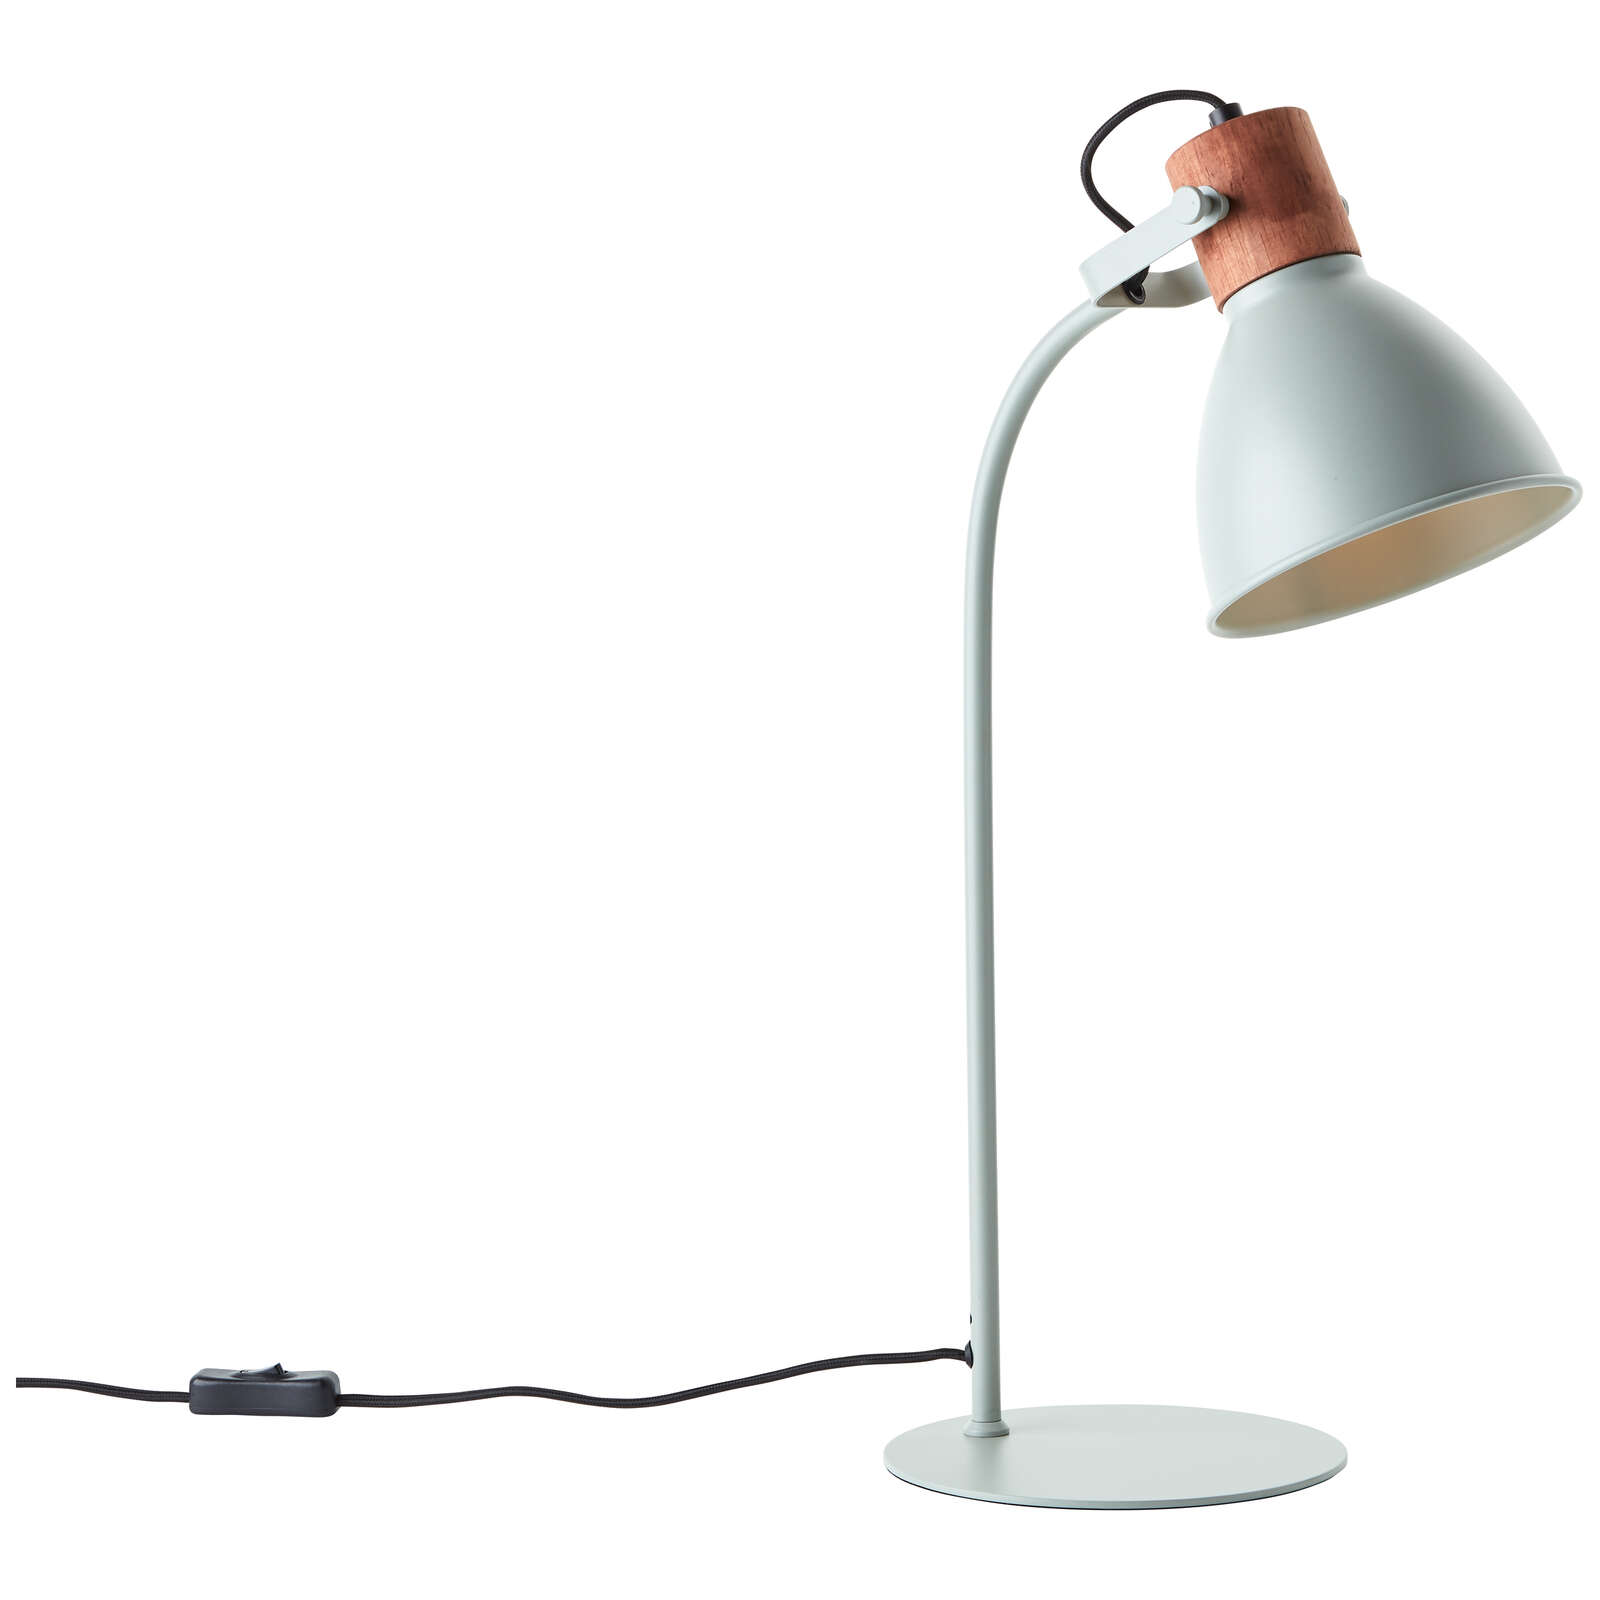             Lámpara de mesa de madera - Franziska 4 - Verde
        